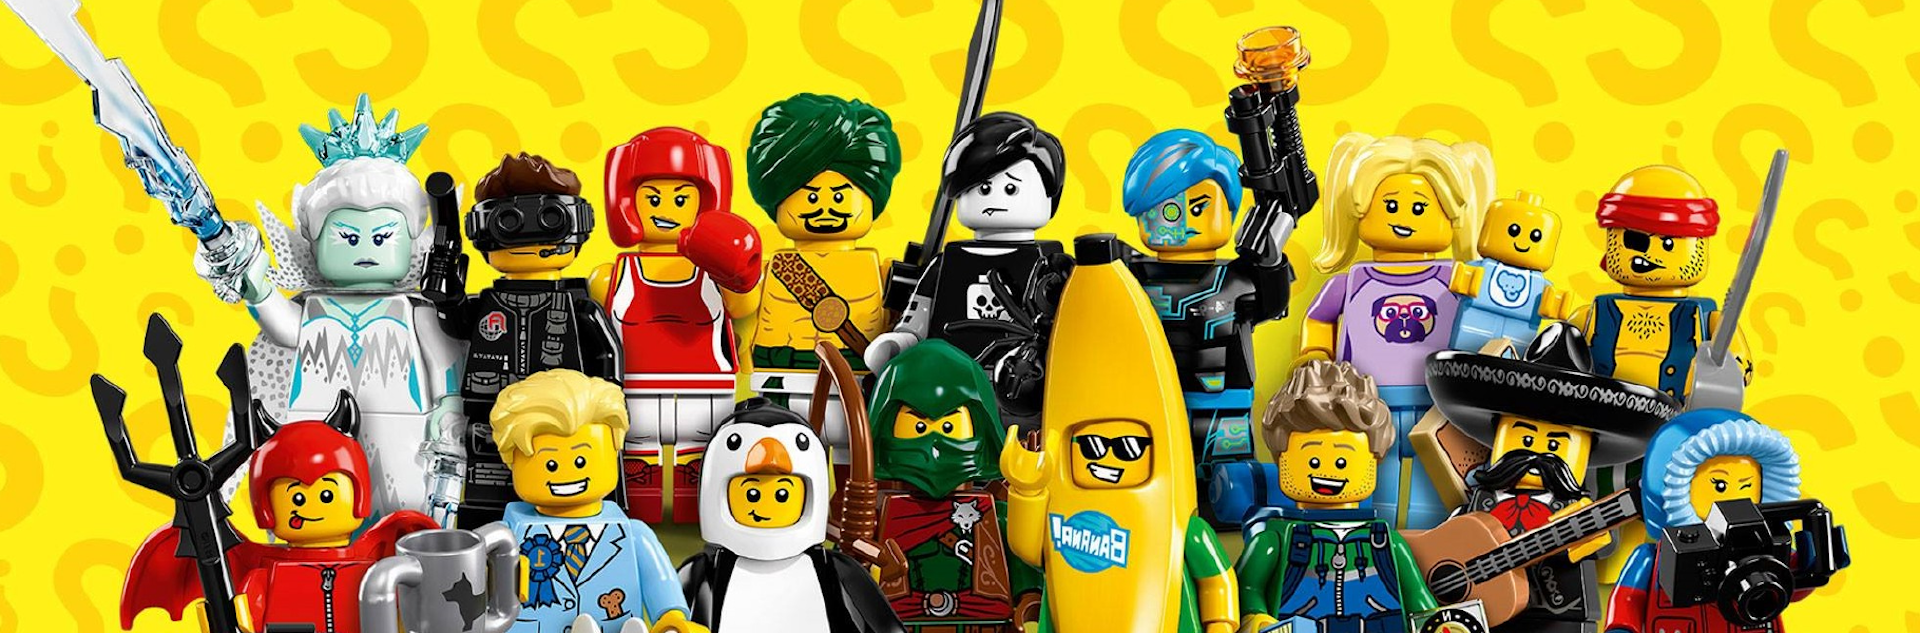 Lego: La historia que debes conocer